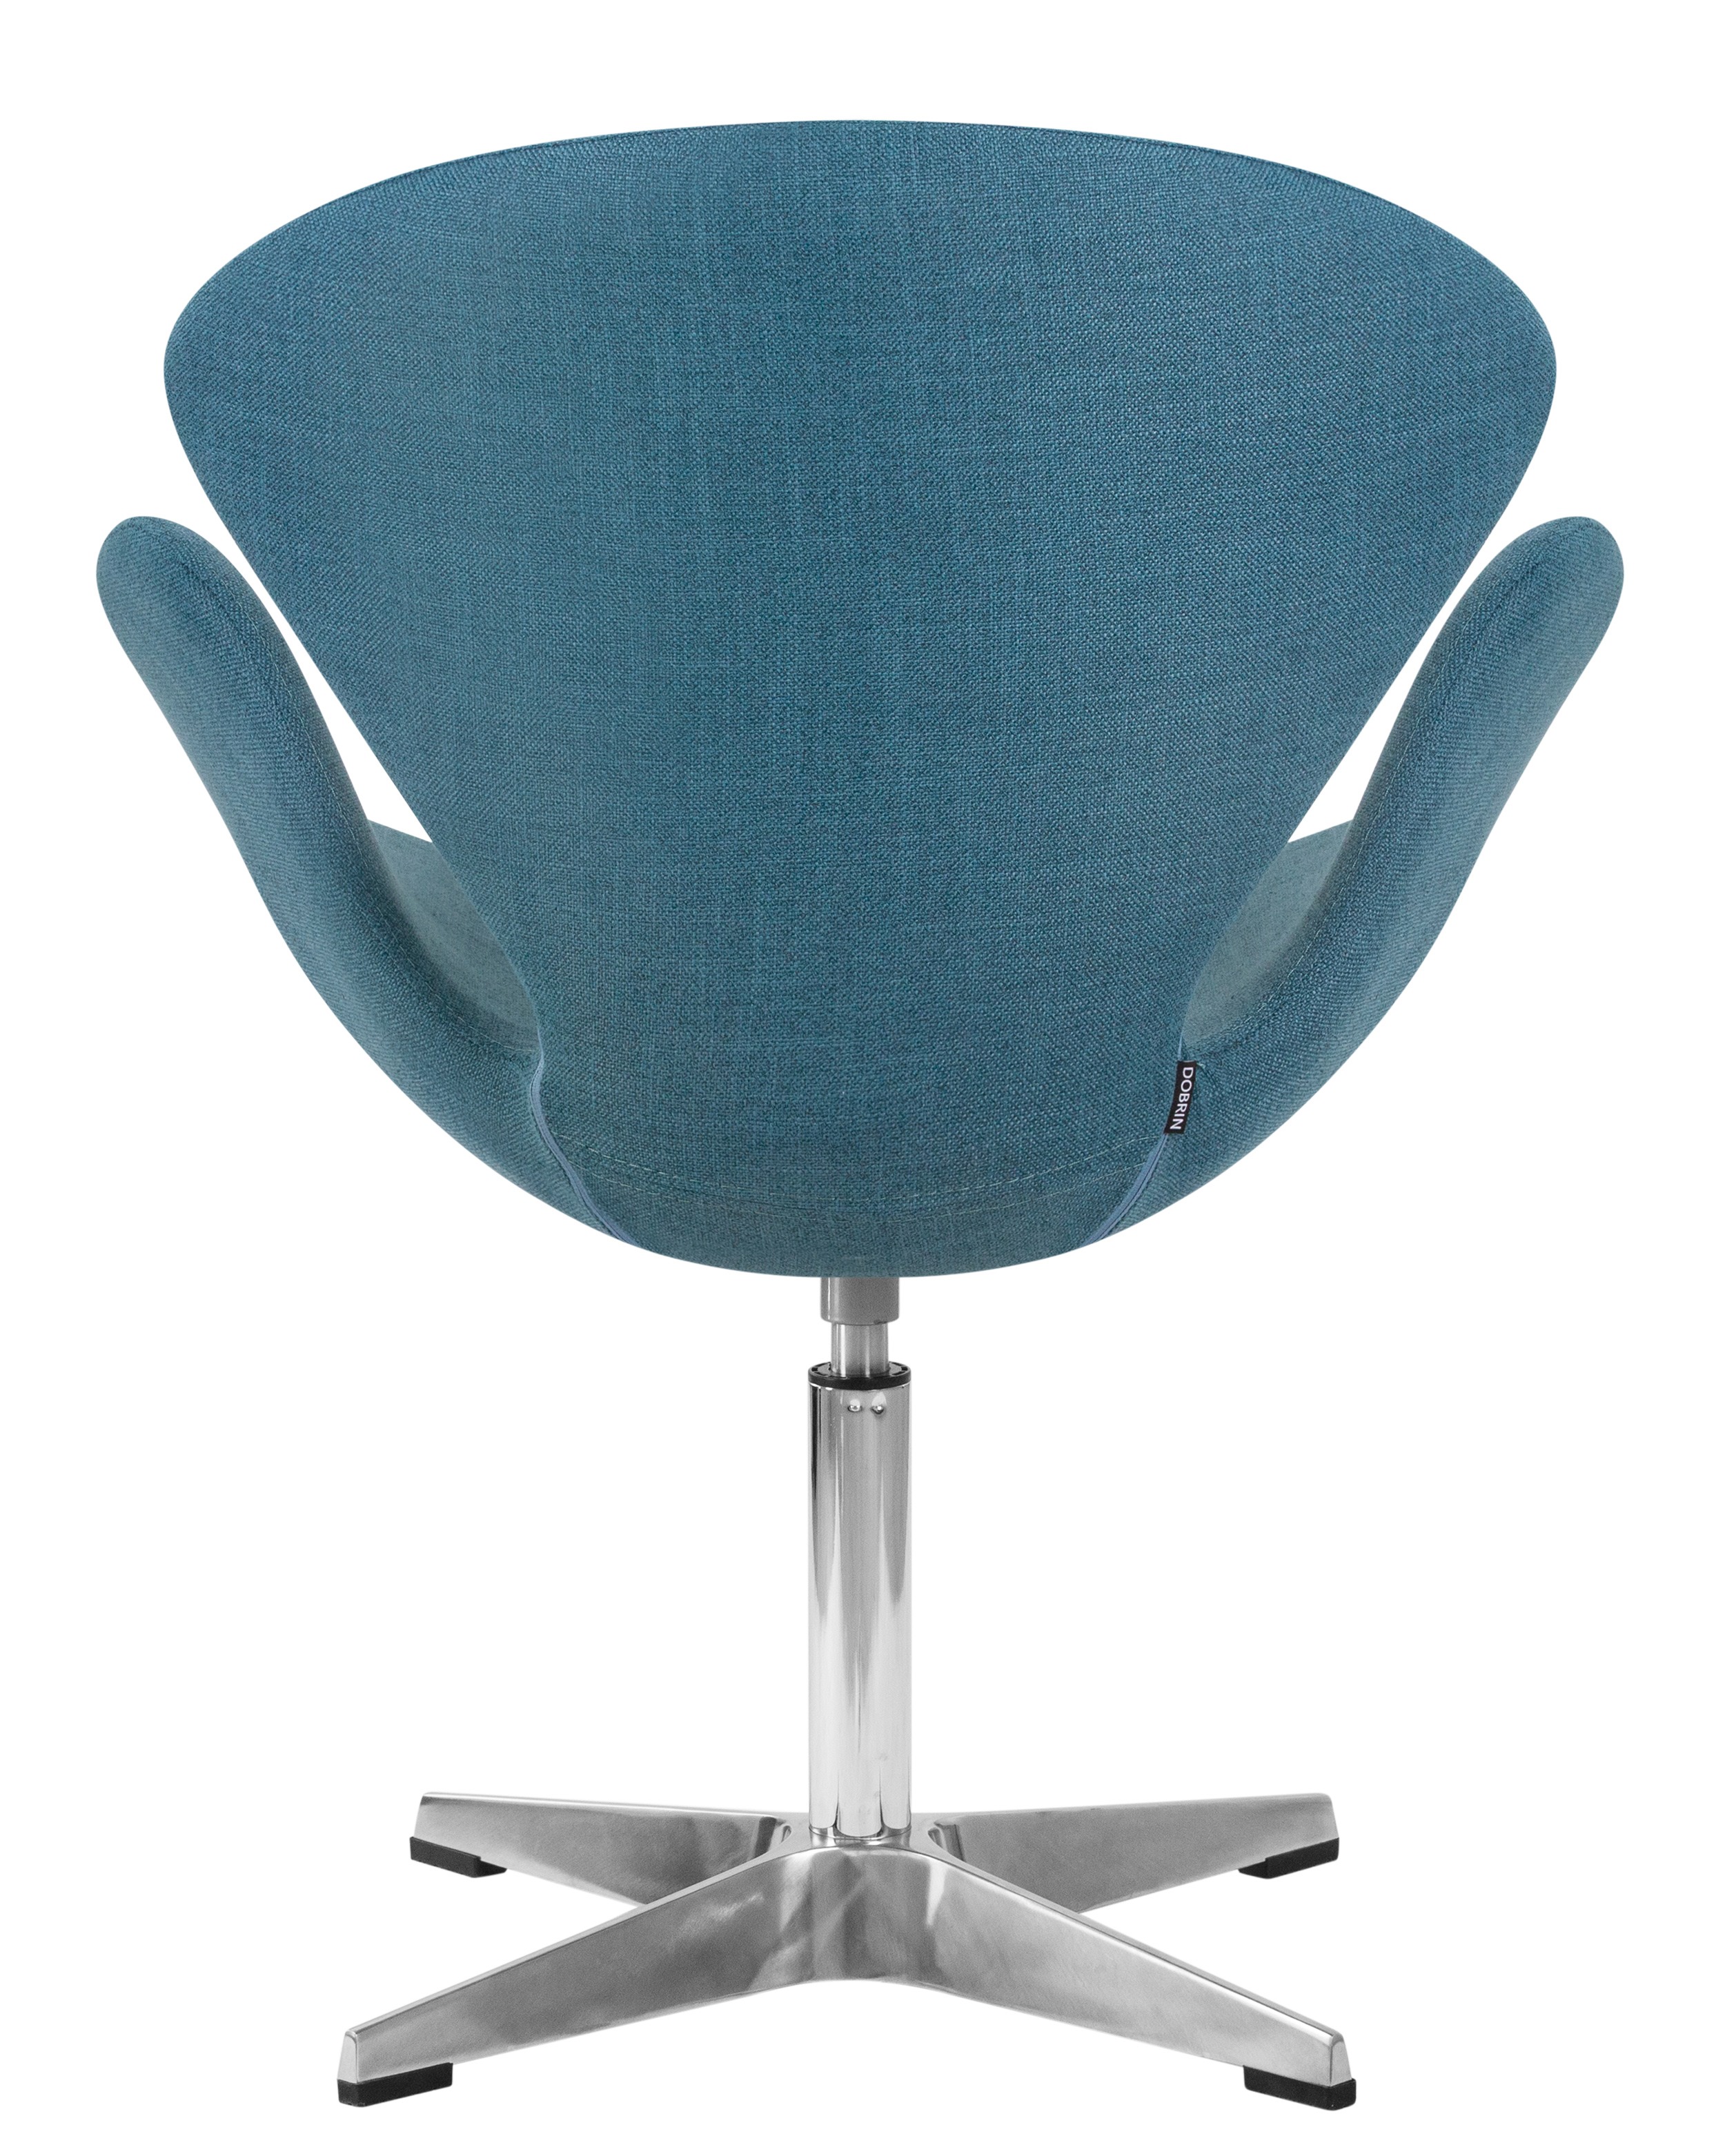 Кресло дизайнерское DOBRIN SWAN (синяя ткань IF6)